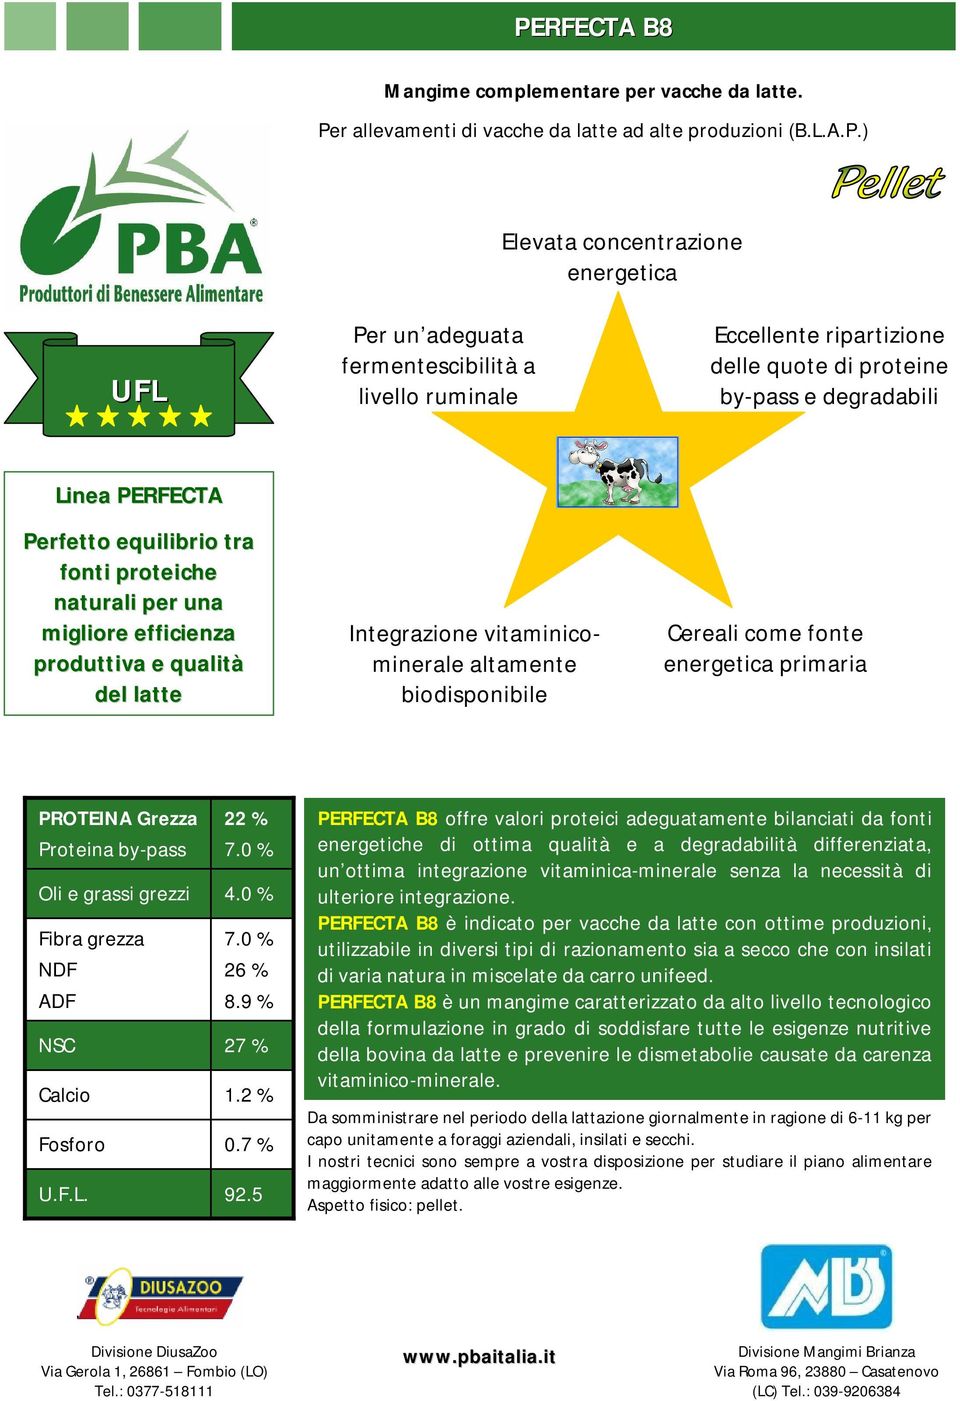 latte Integrazione vitaminicominerale altamente biodisponibile Cereali come fonte energetica primaria PROTEINA Grezza 22 % 7.0 % 4.0 % 7.0 % 26 % 8.9 % 27 % 1.2 % 0.7 % 92.